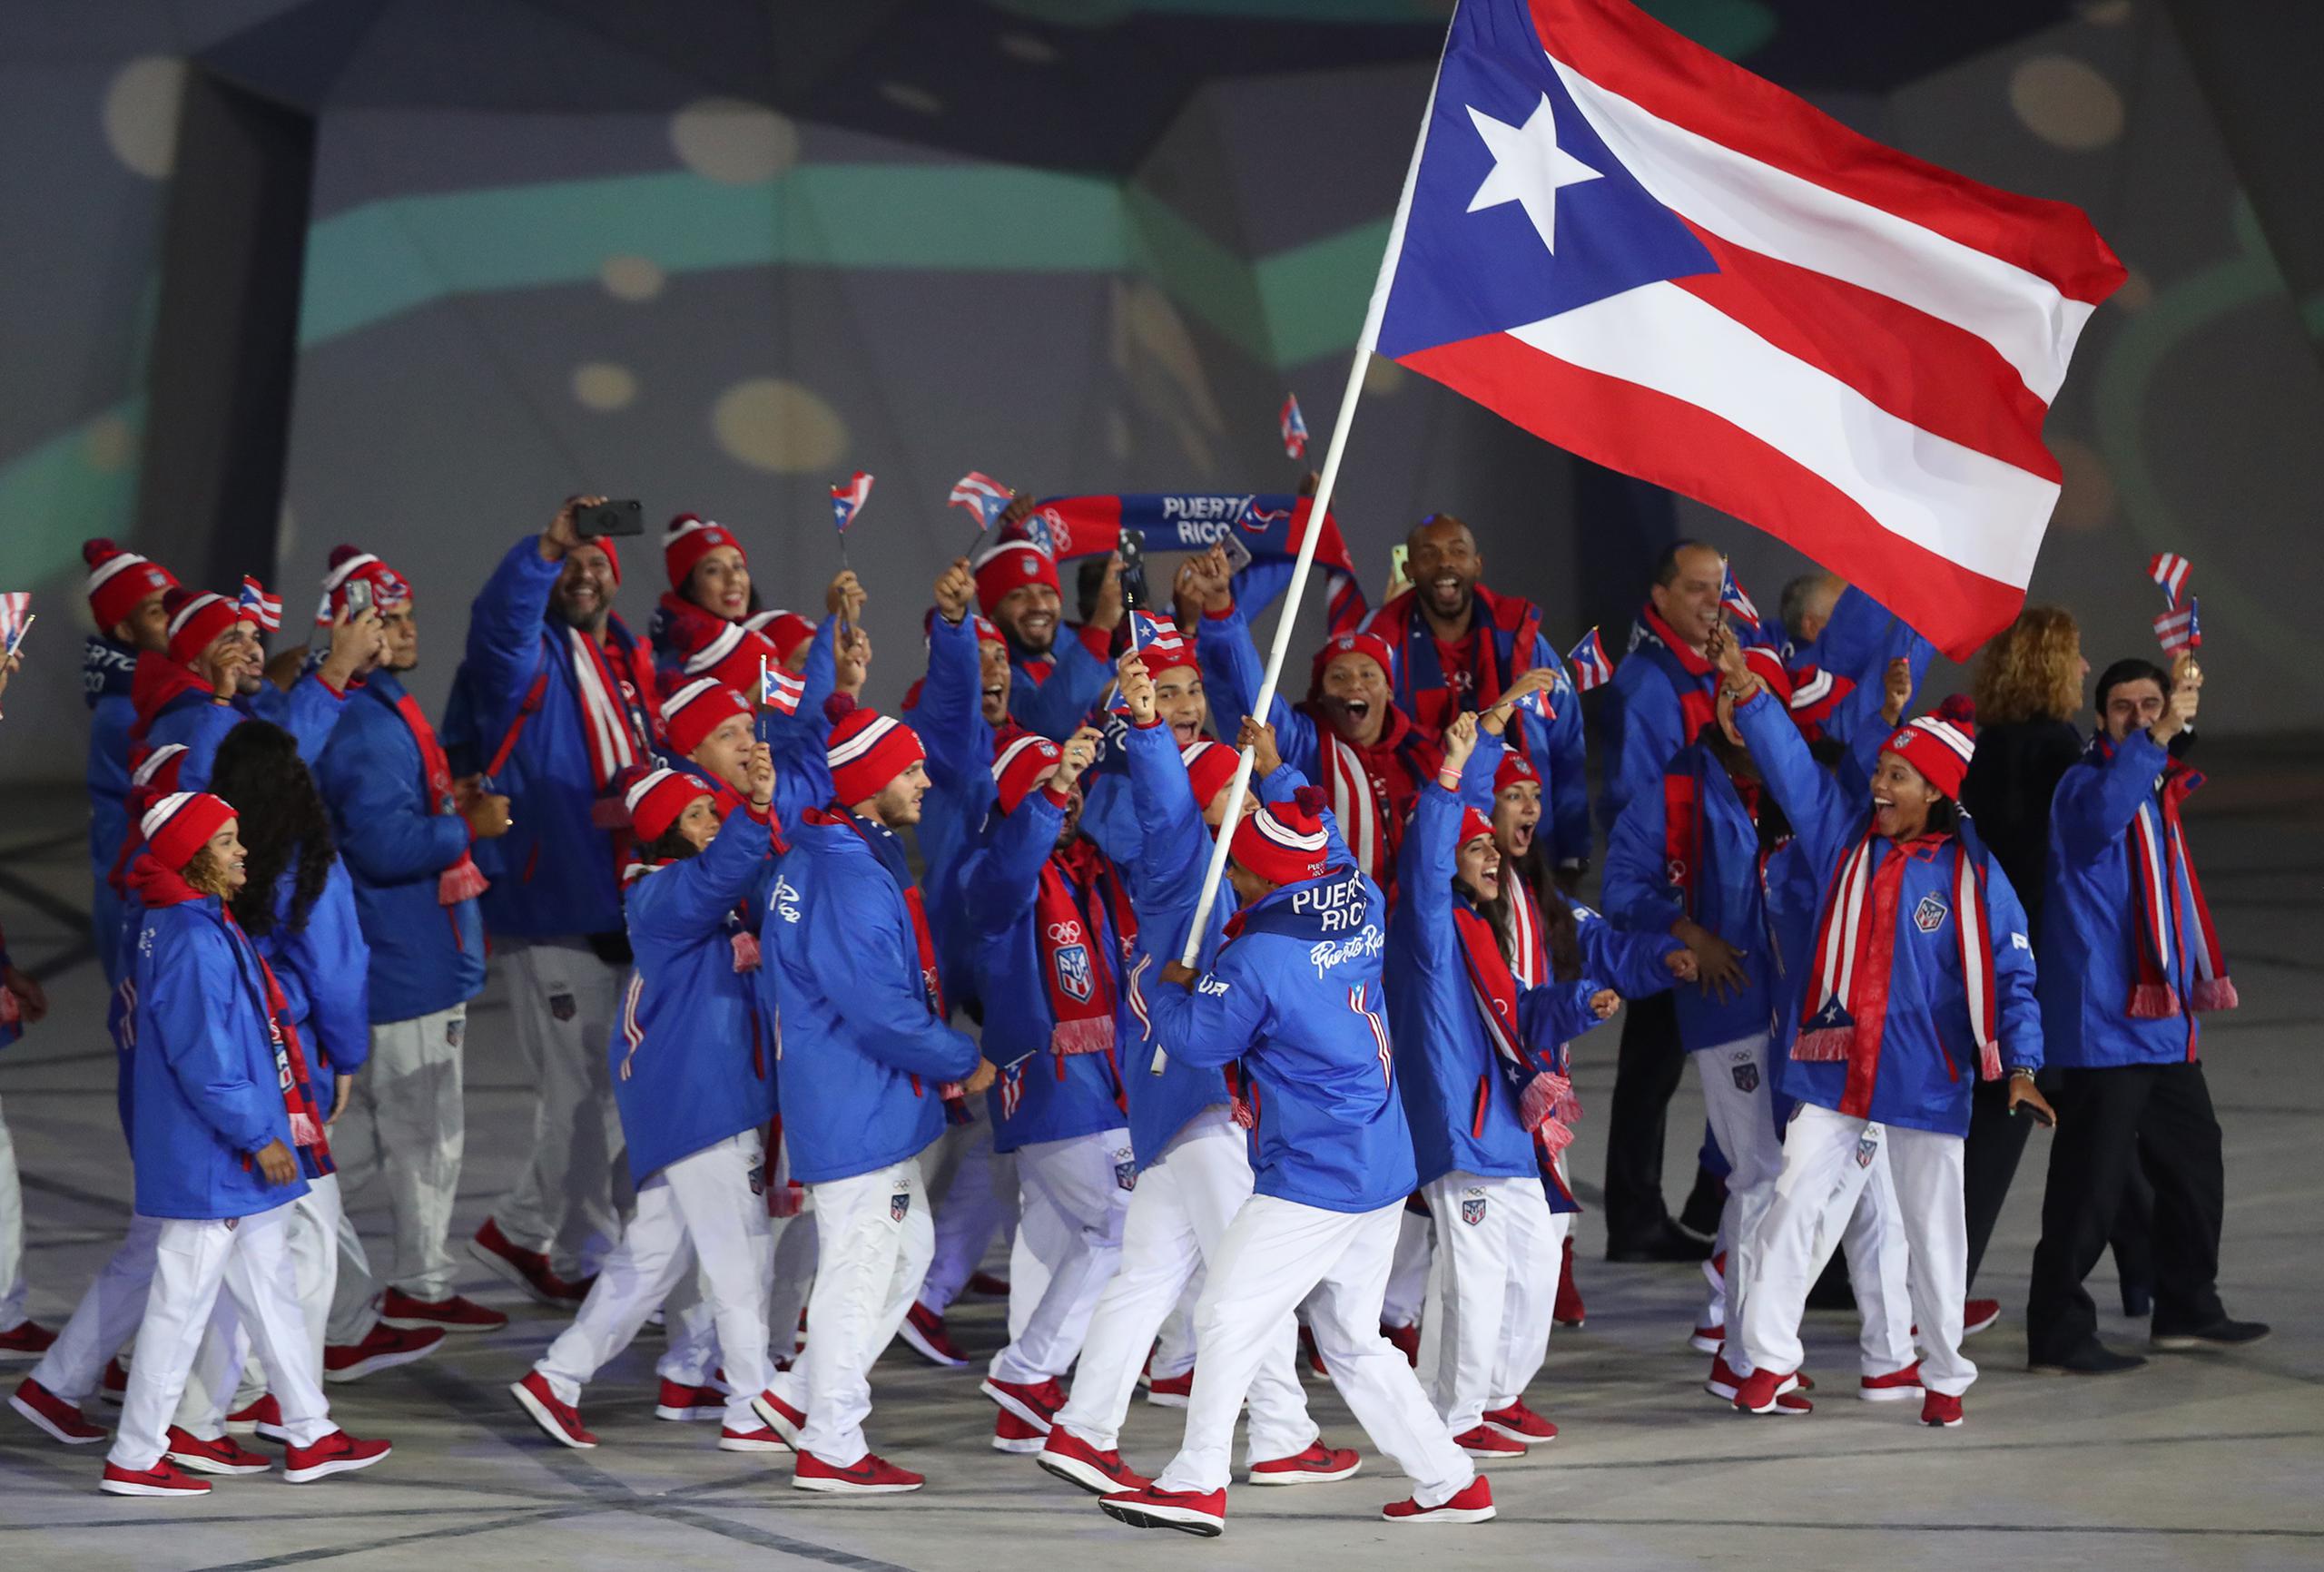 Durante la celebración de los Juegos Panamericanos en Lima, mientras en Puerto Rico había protestas en la calle buscando la renuncia de Ricardo Rosselló, a los atletas boricuas se les pidió que no hicieran comentarios al respecto.